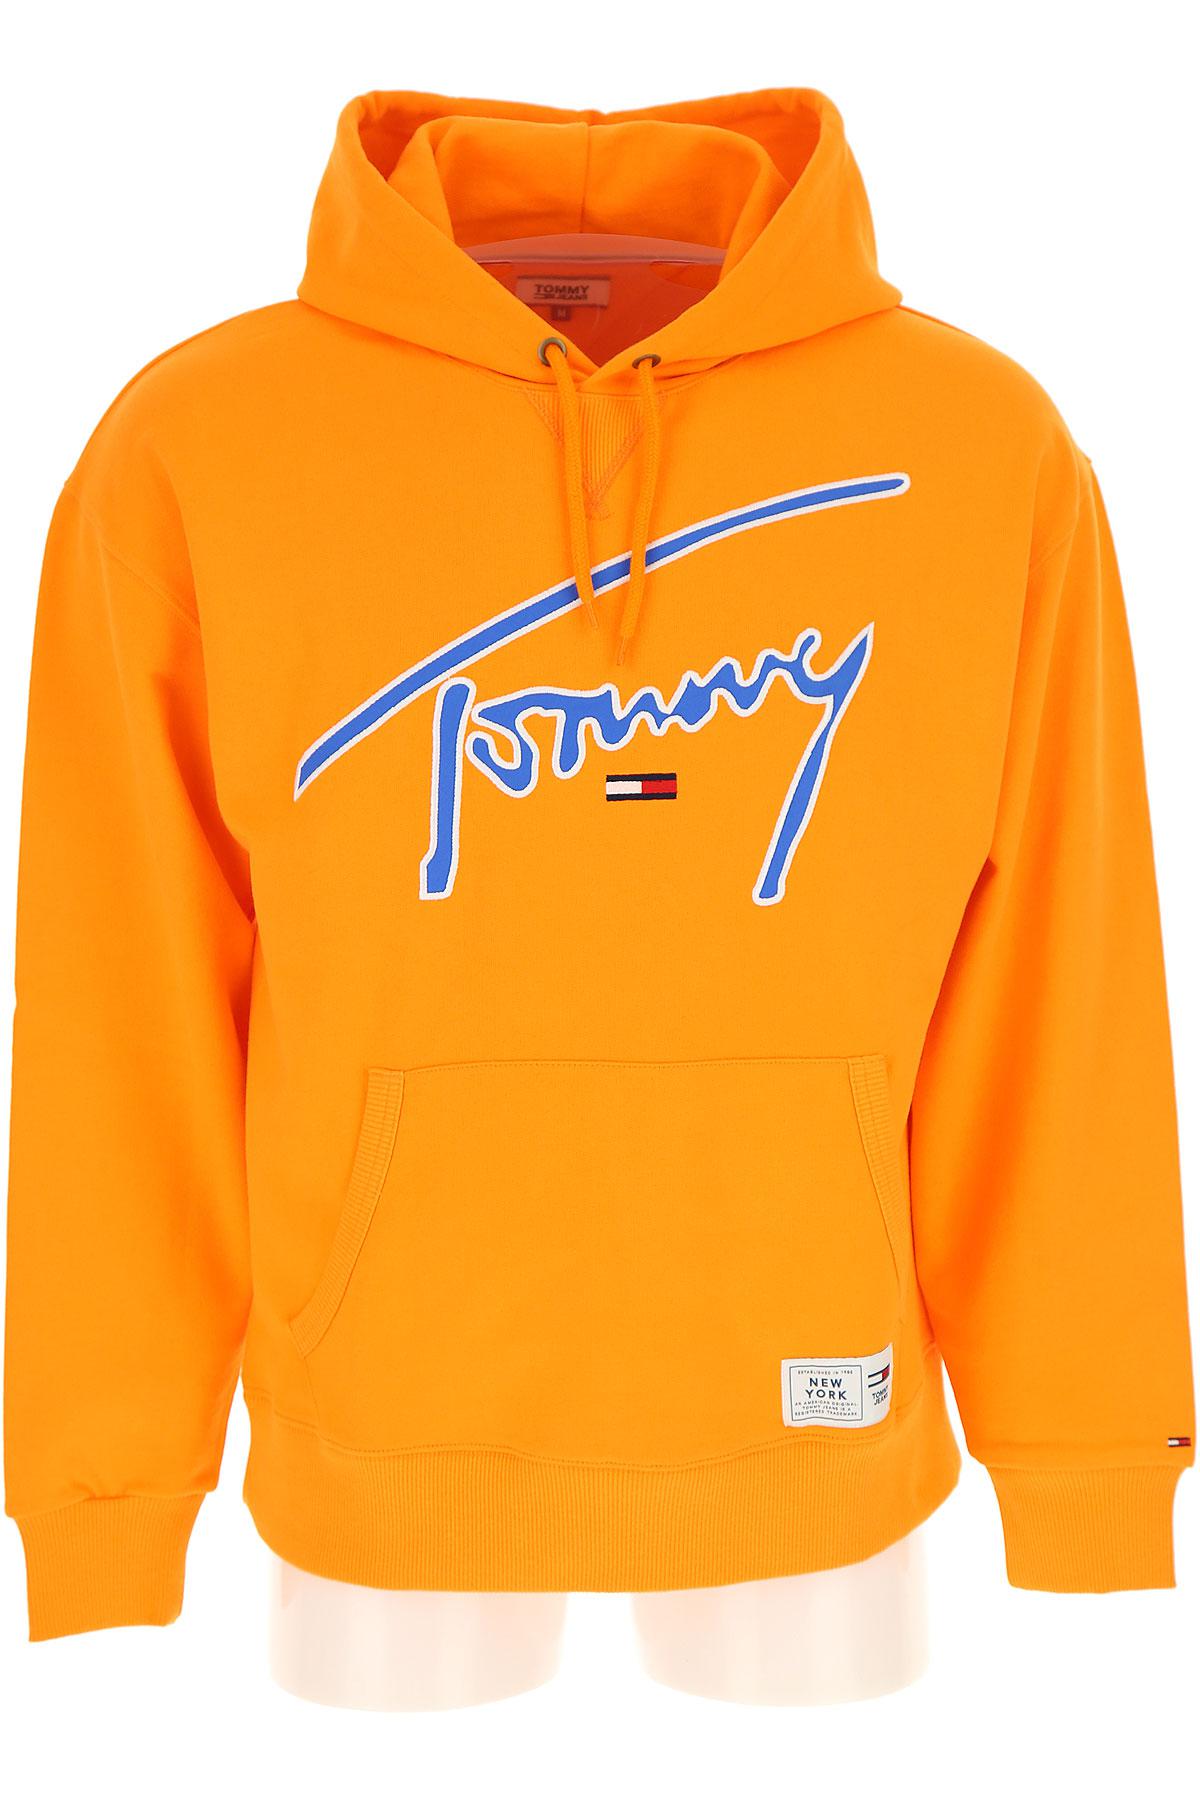 tommy hilfiger orange jumper